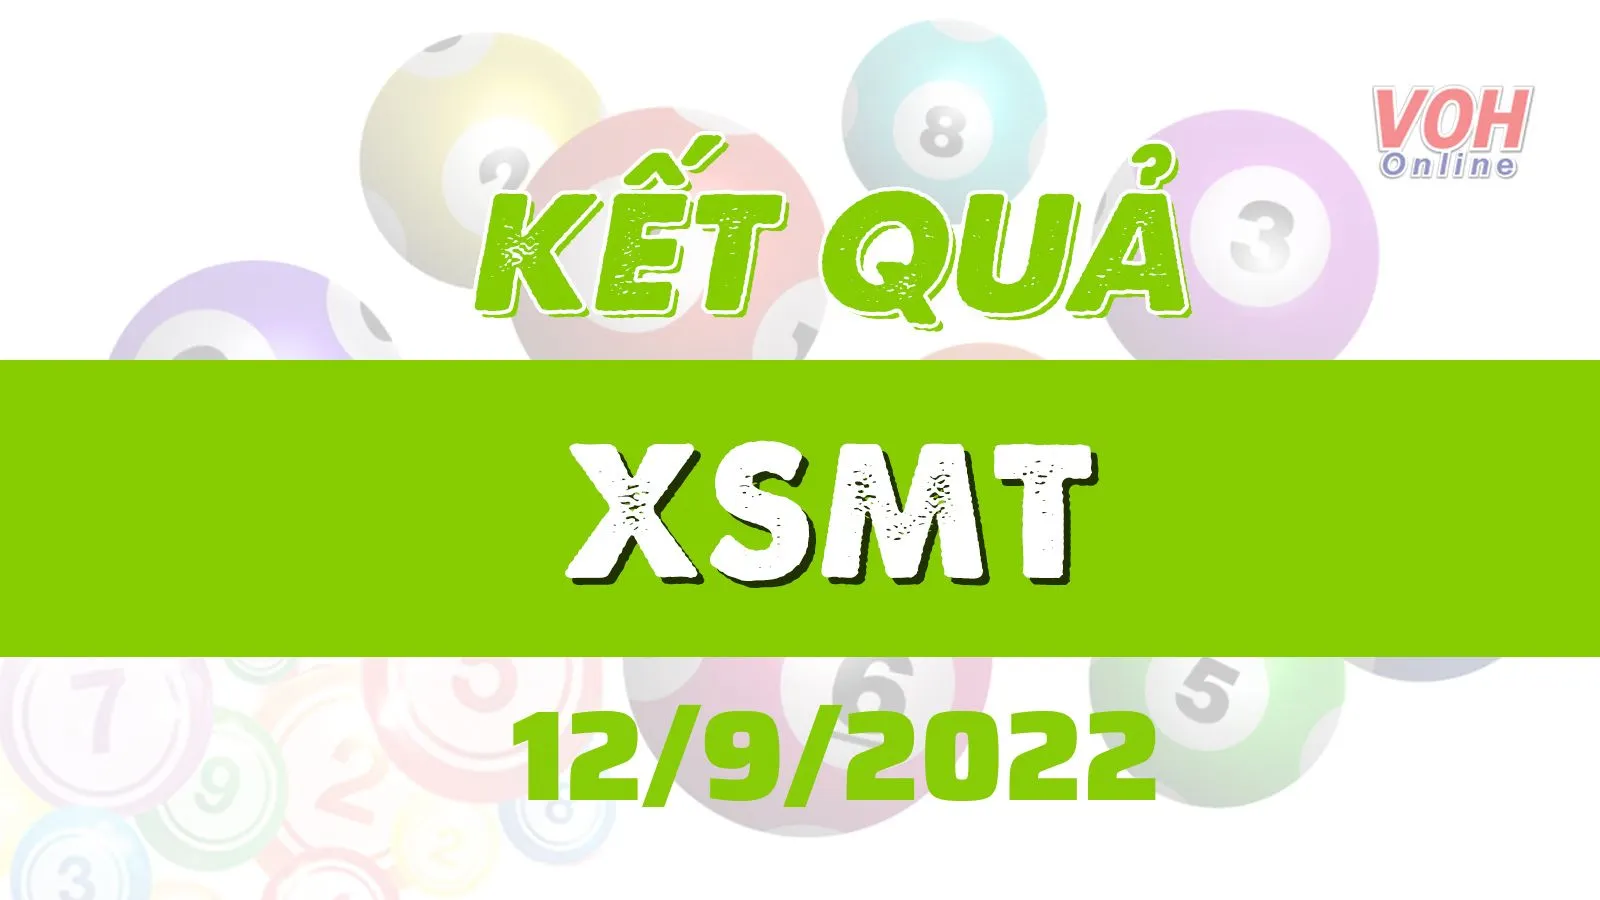 Xổ số miền Trung hôm nay, XSMT 12/9, SXMT 12/9/2022 - Kết quả xổ số ngày 12 tháng 9